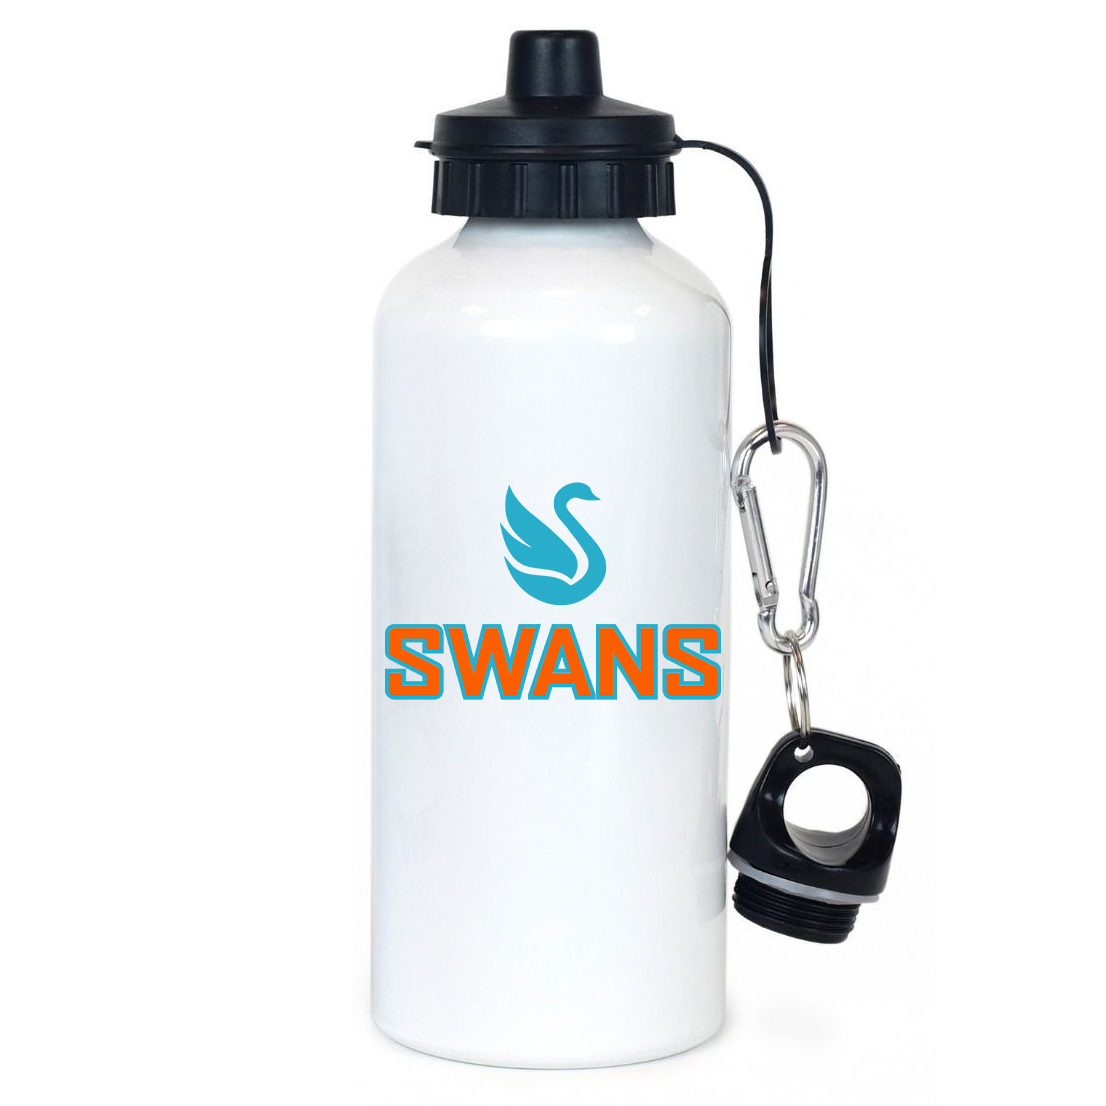 Swans Lacrosse Team Water Bottle